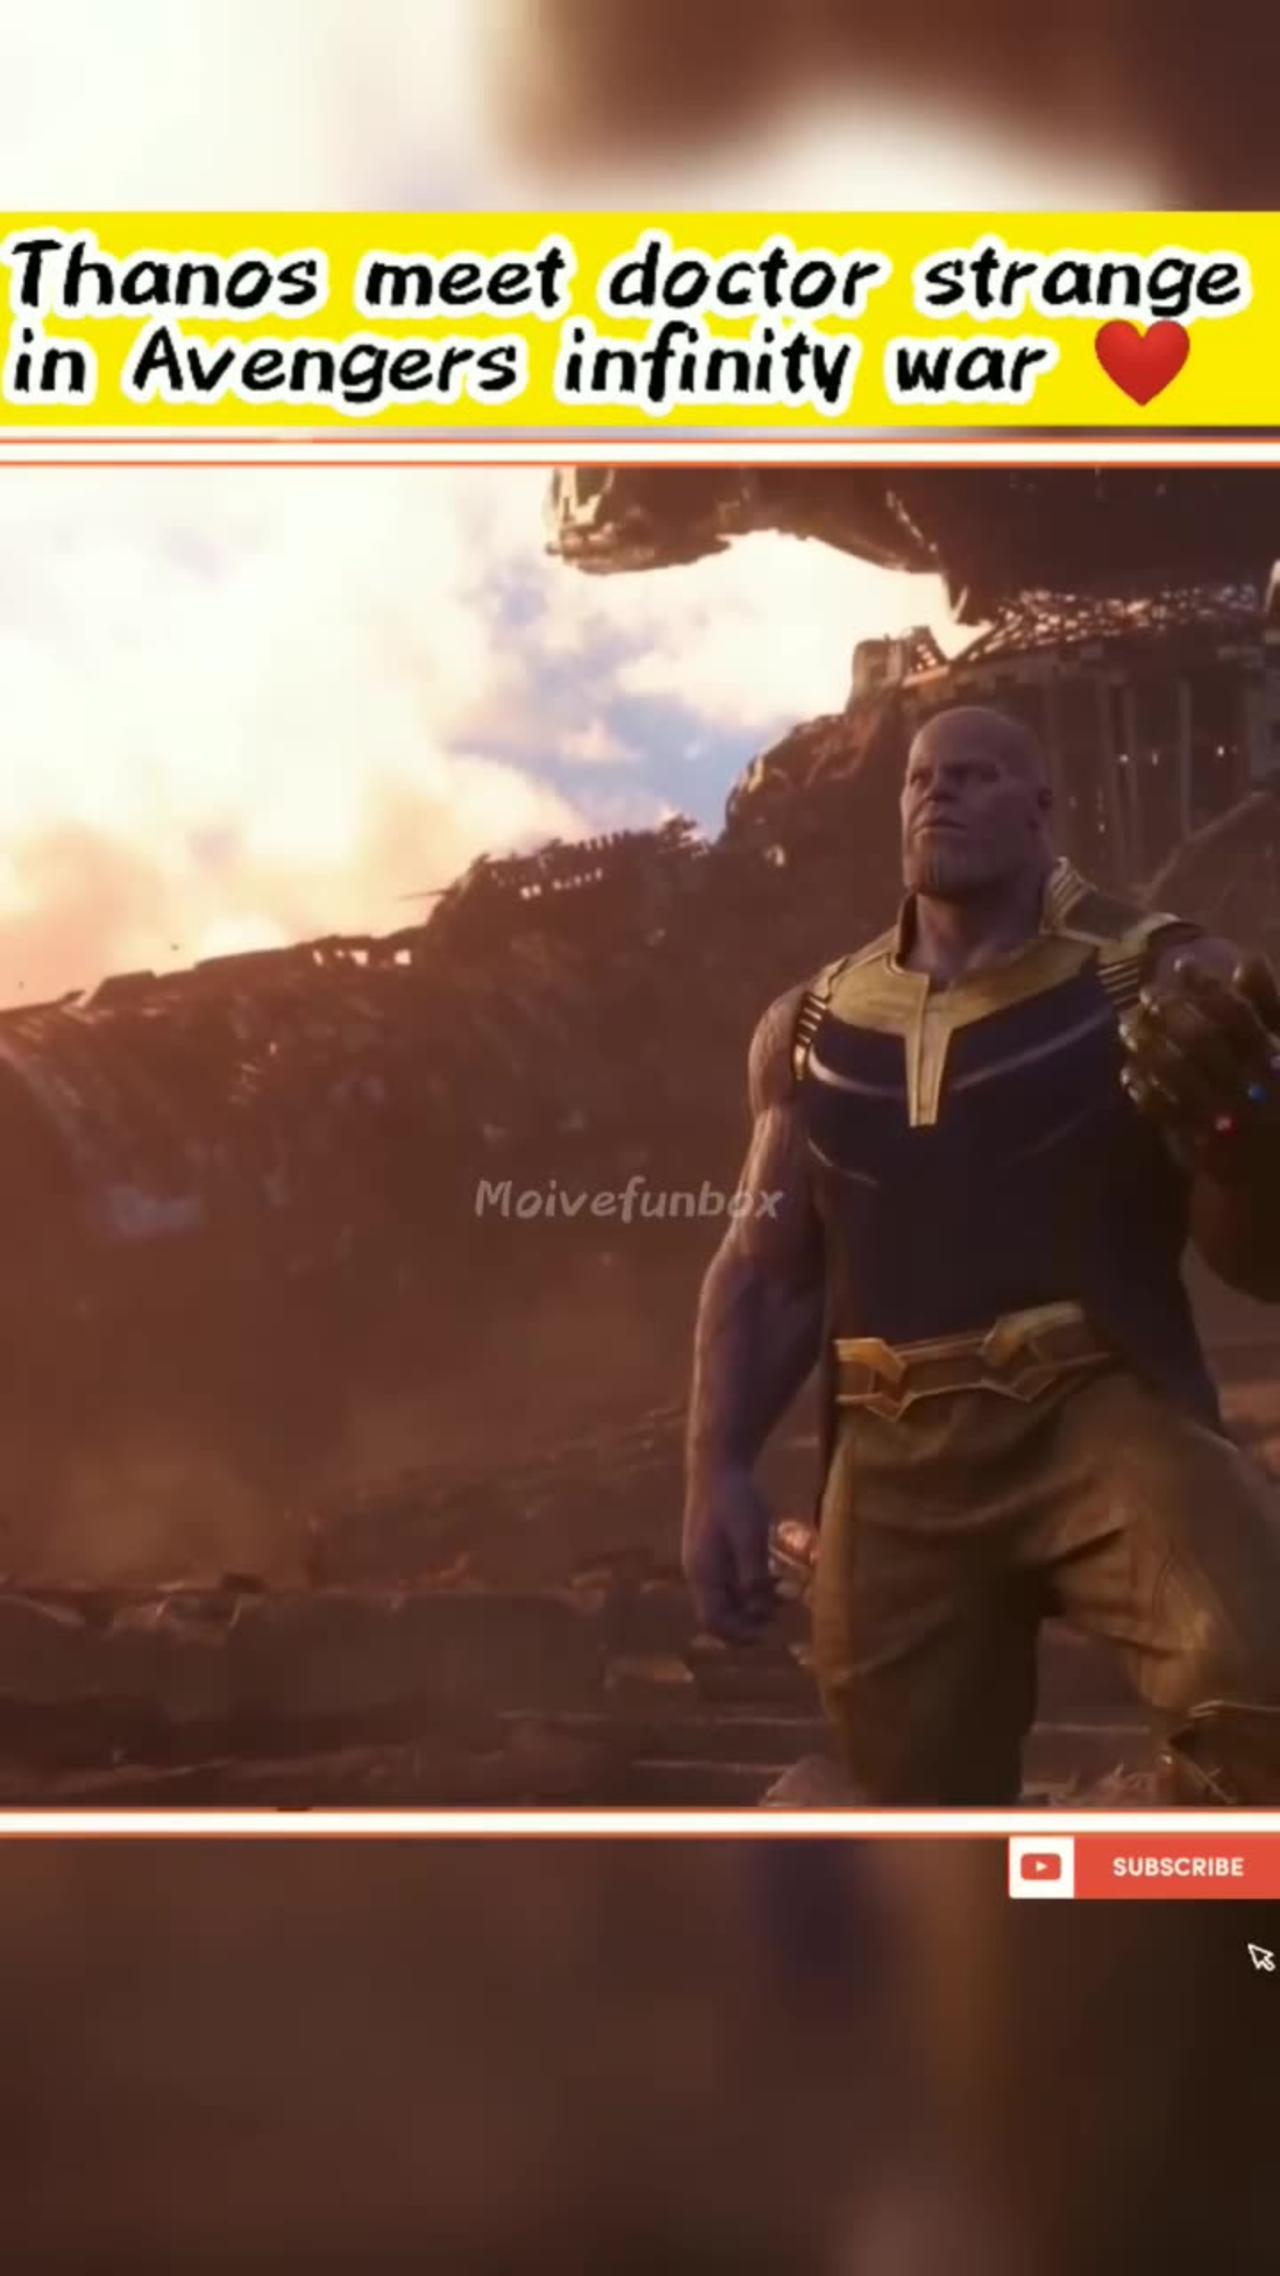 Thanos meet doctor strange in Avengers infinity war😈#moivefunbox#thanos #doctorstrange #infinitywar